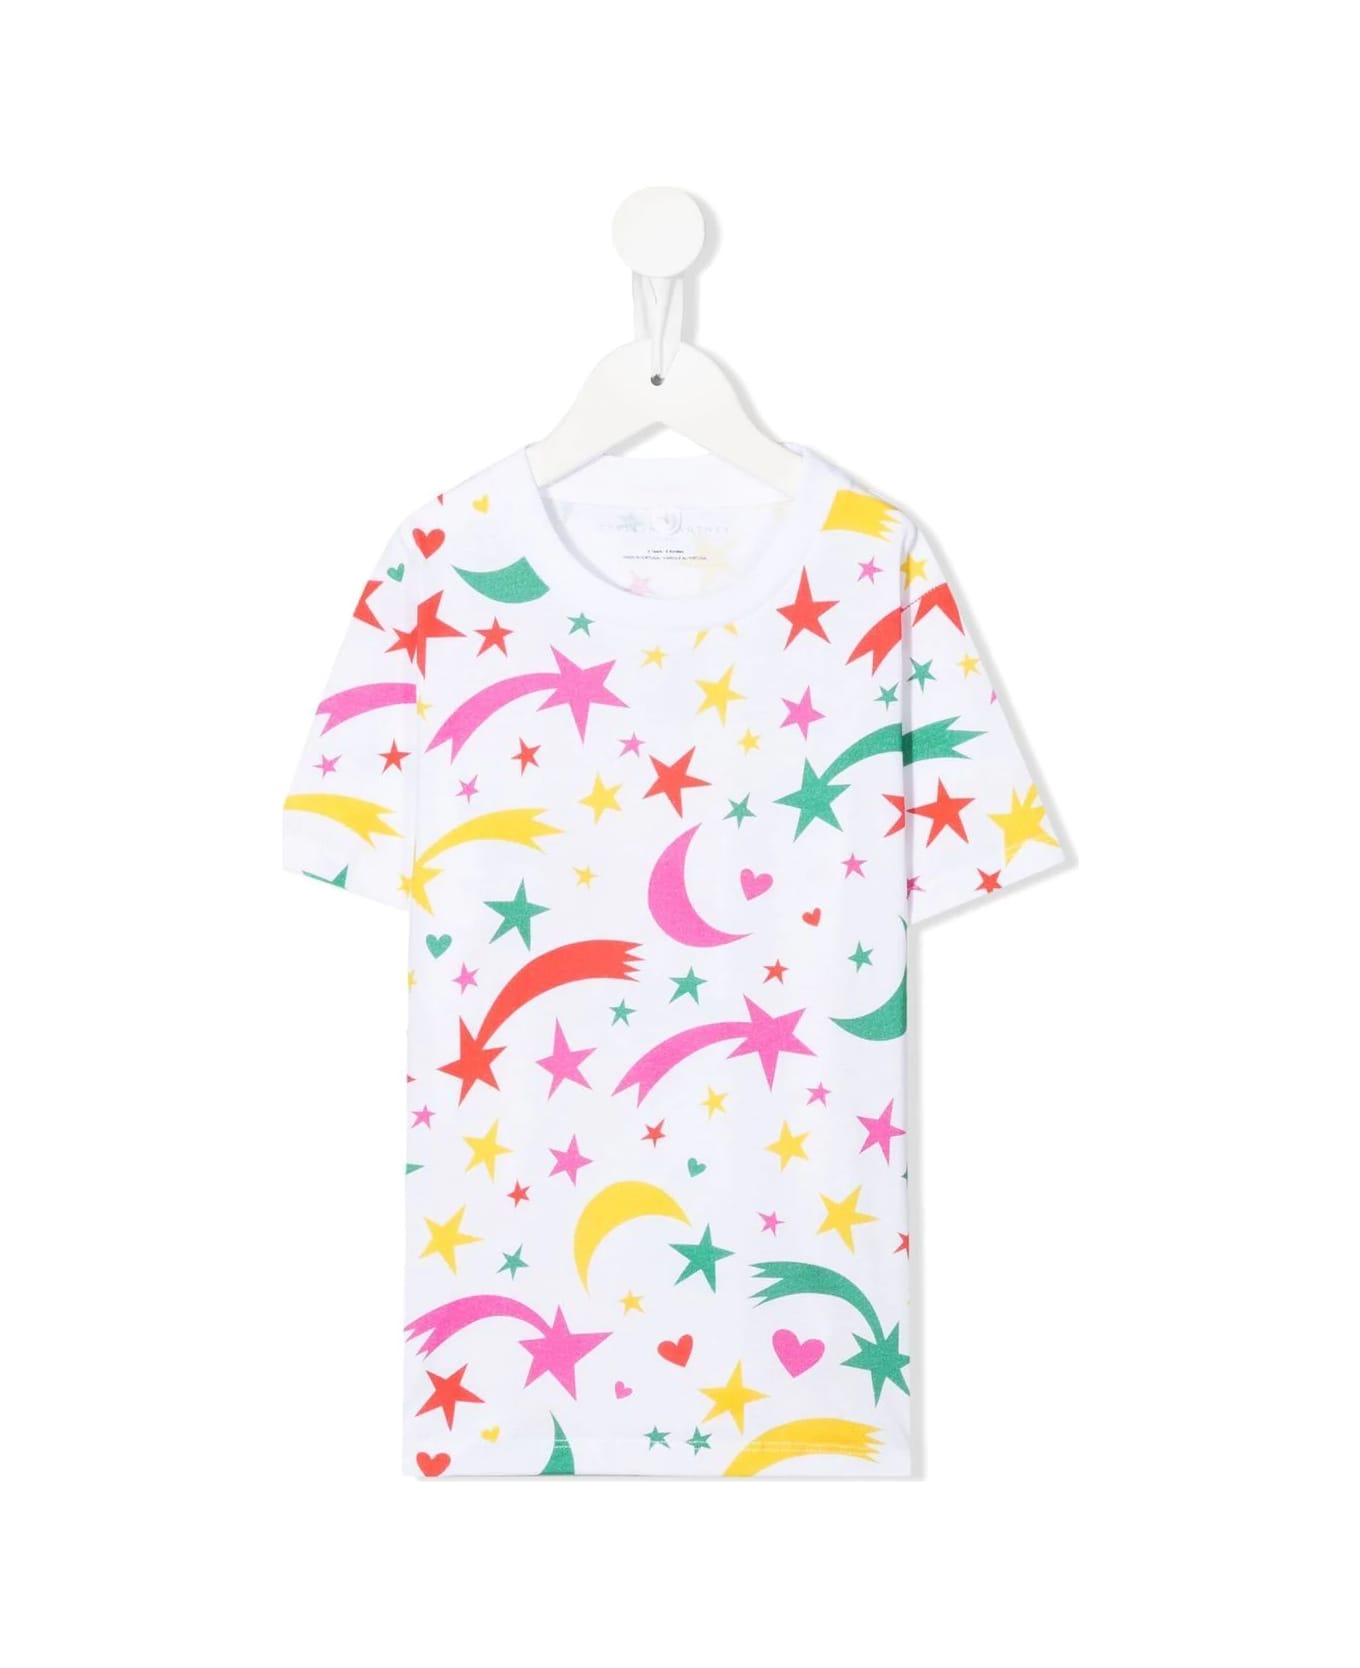 Stella McCartney Kids Short Sleeves T-shirt All Over Print - White Multicolor